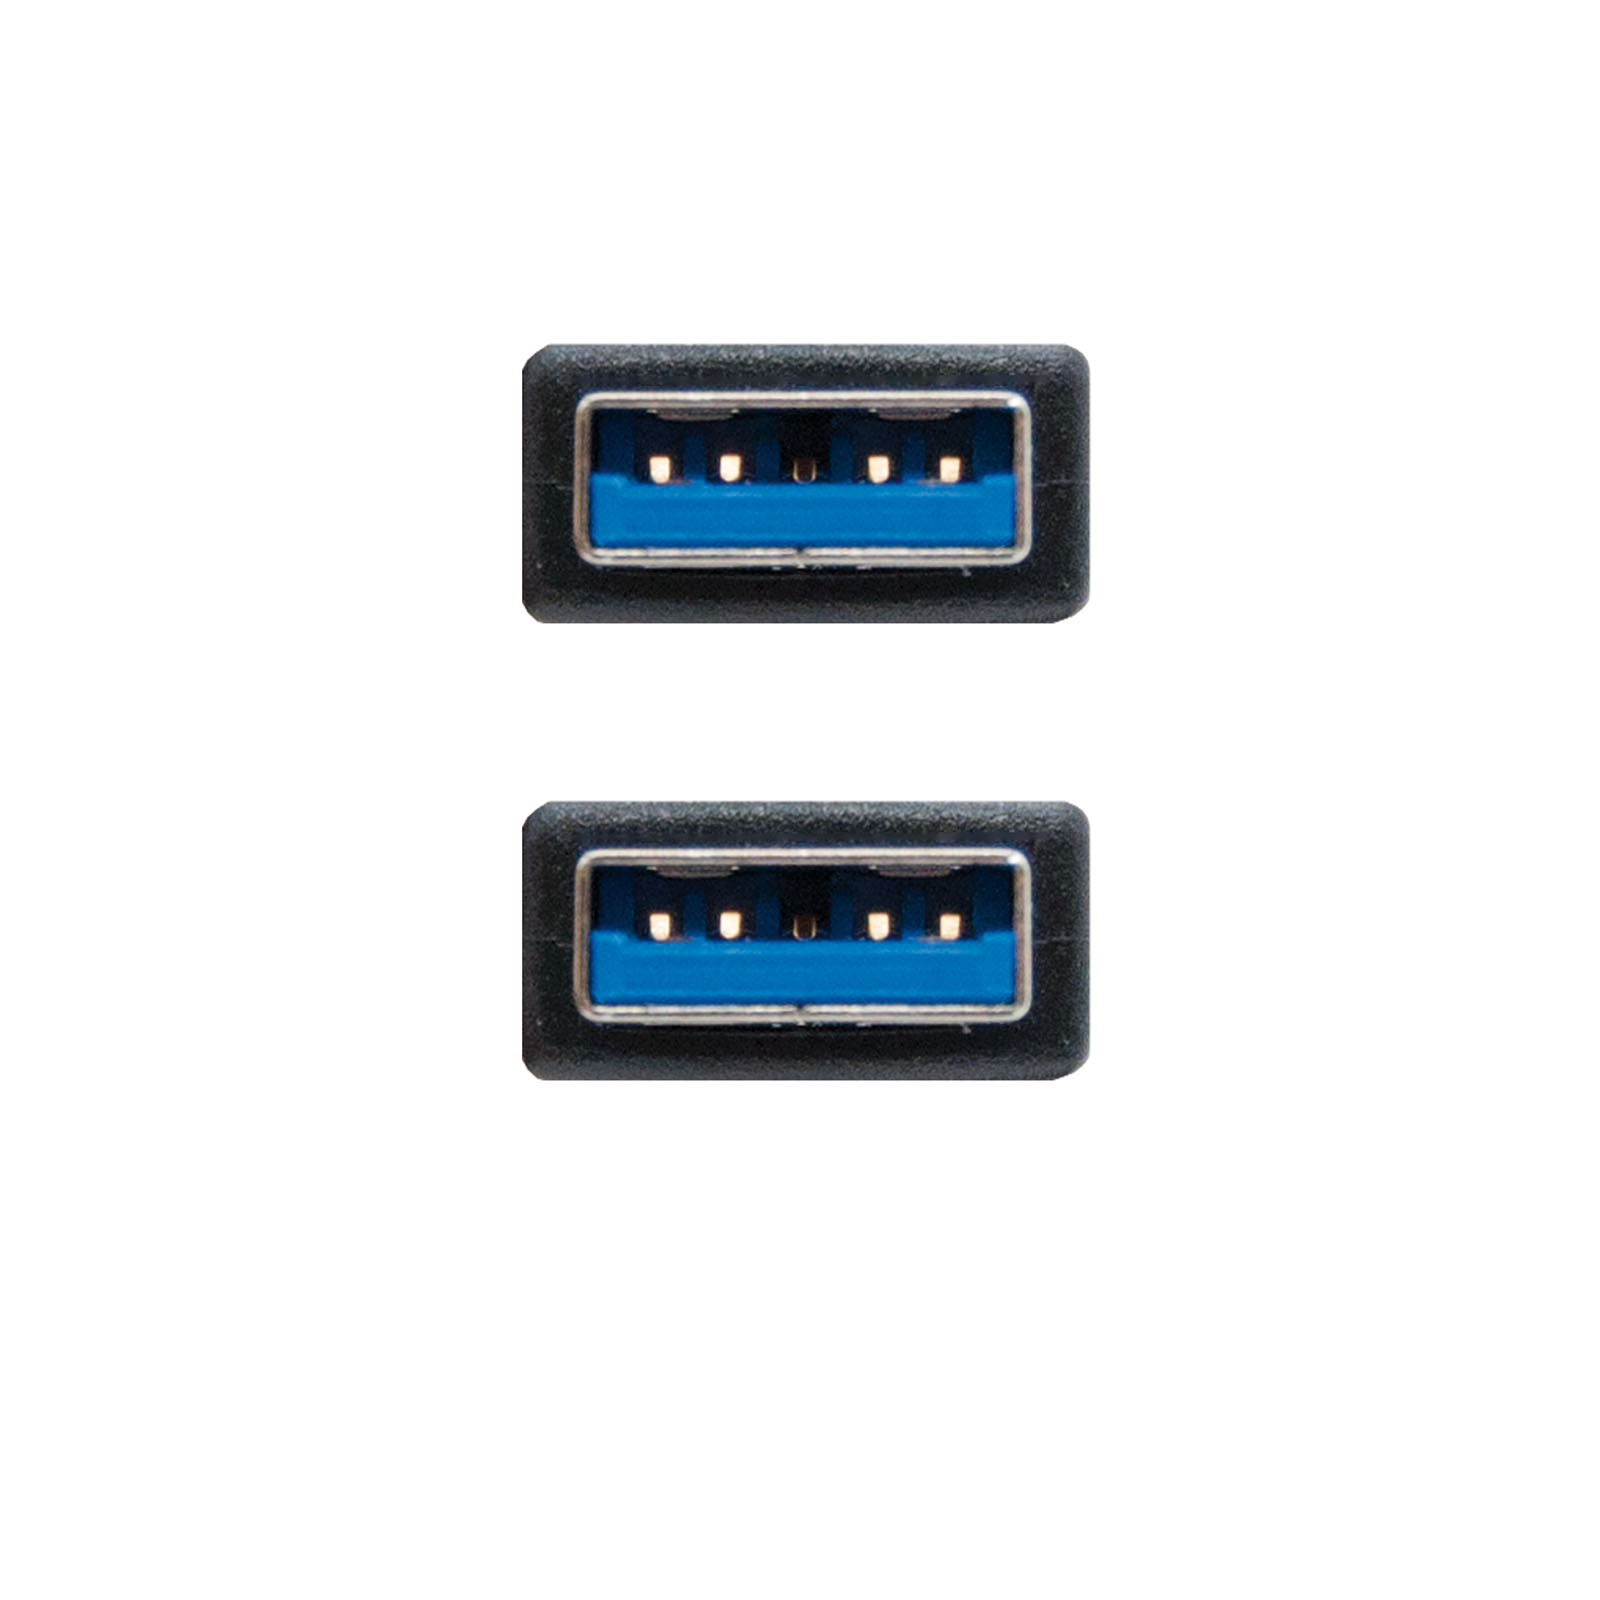 Câble USB-A 3.0 Mâle vers USB-A Mâle 1m